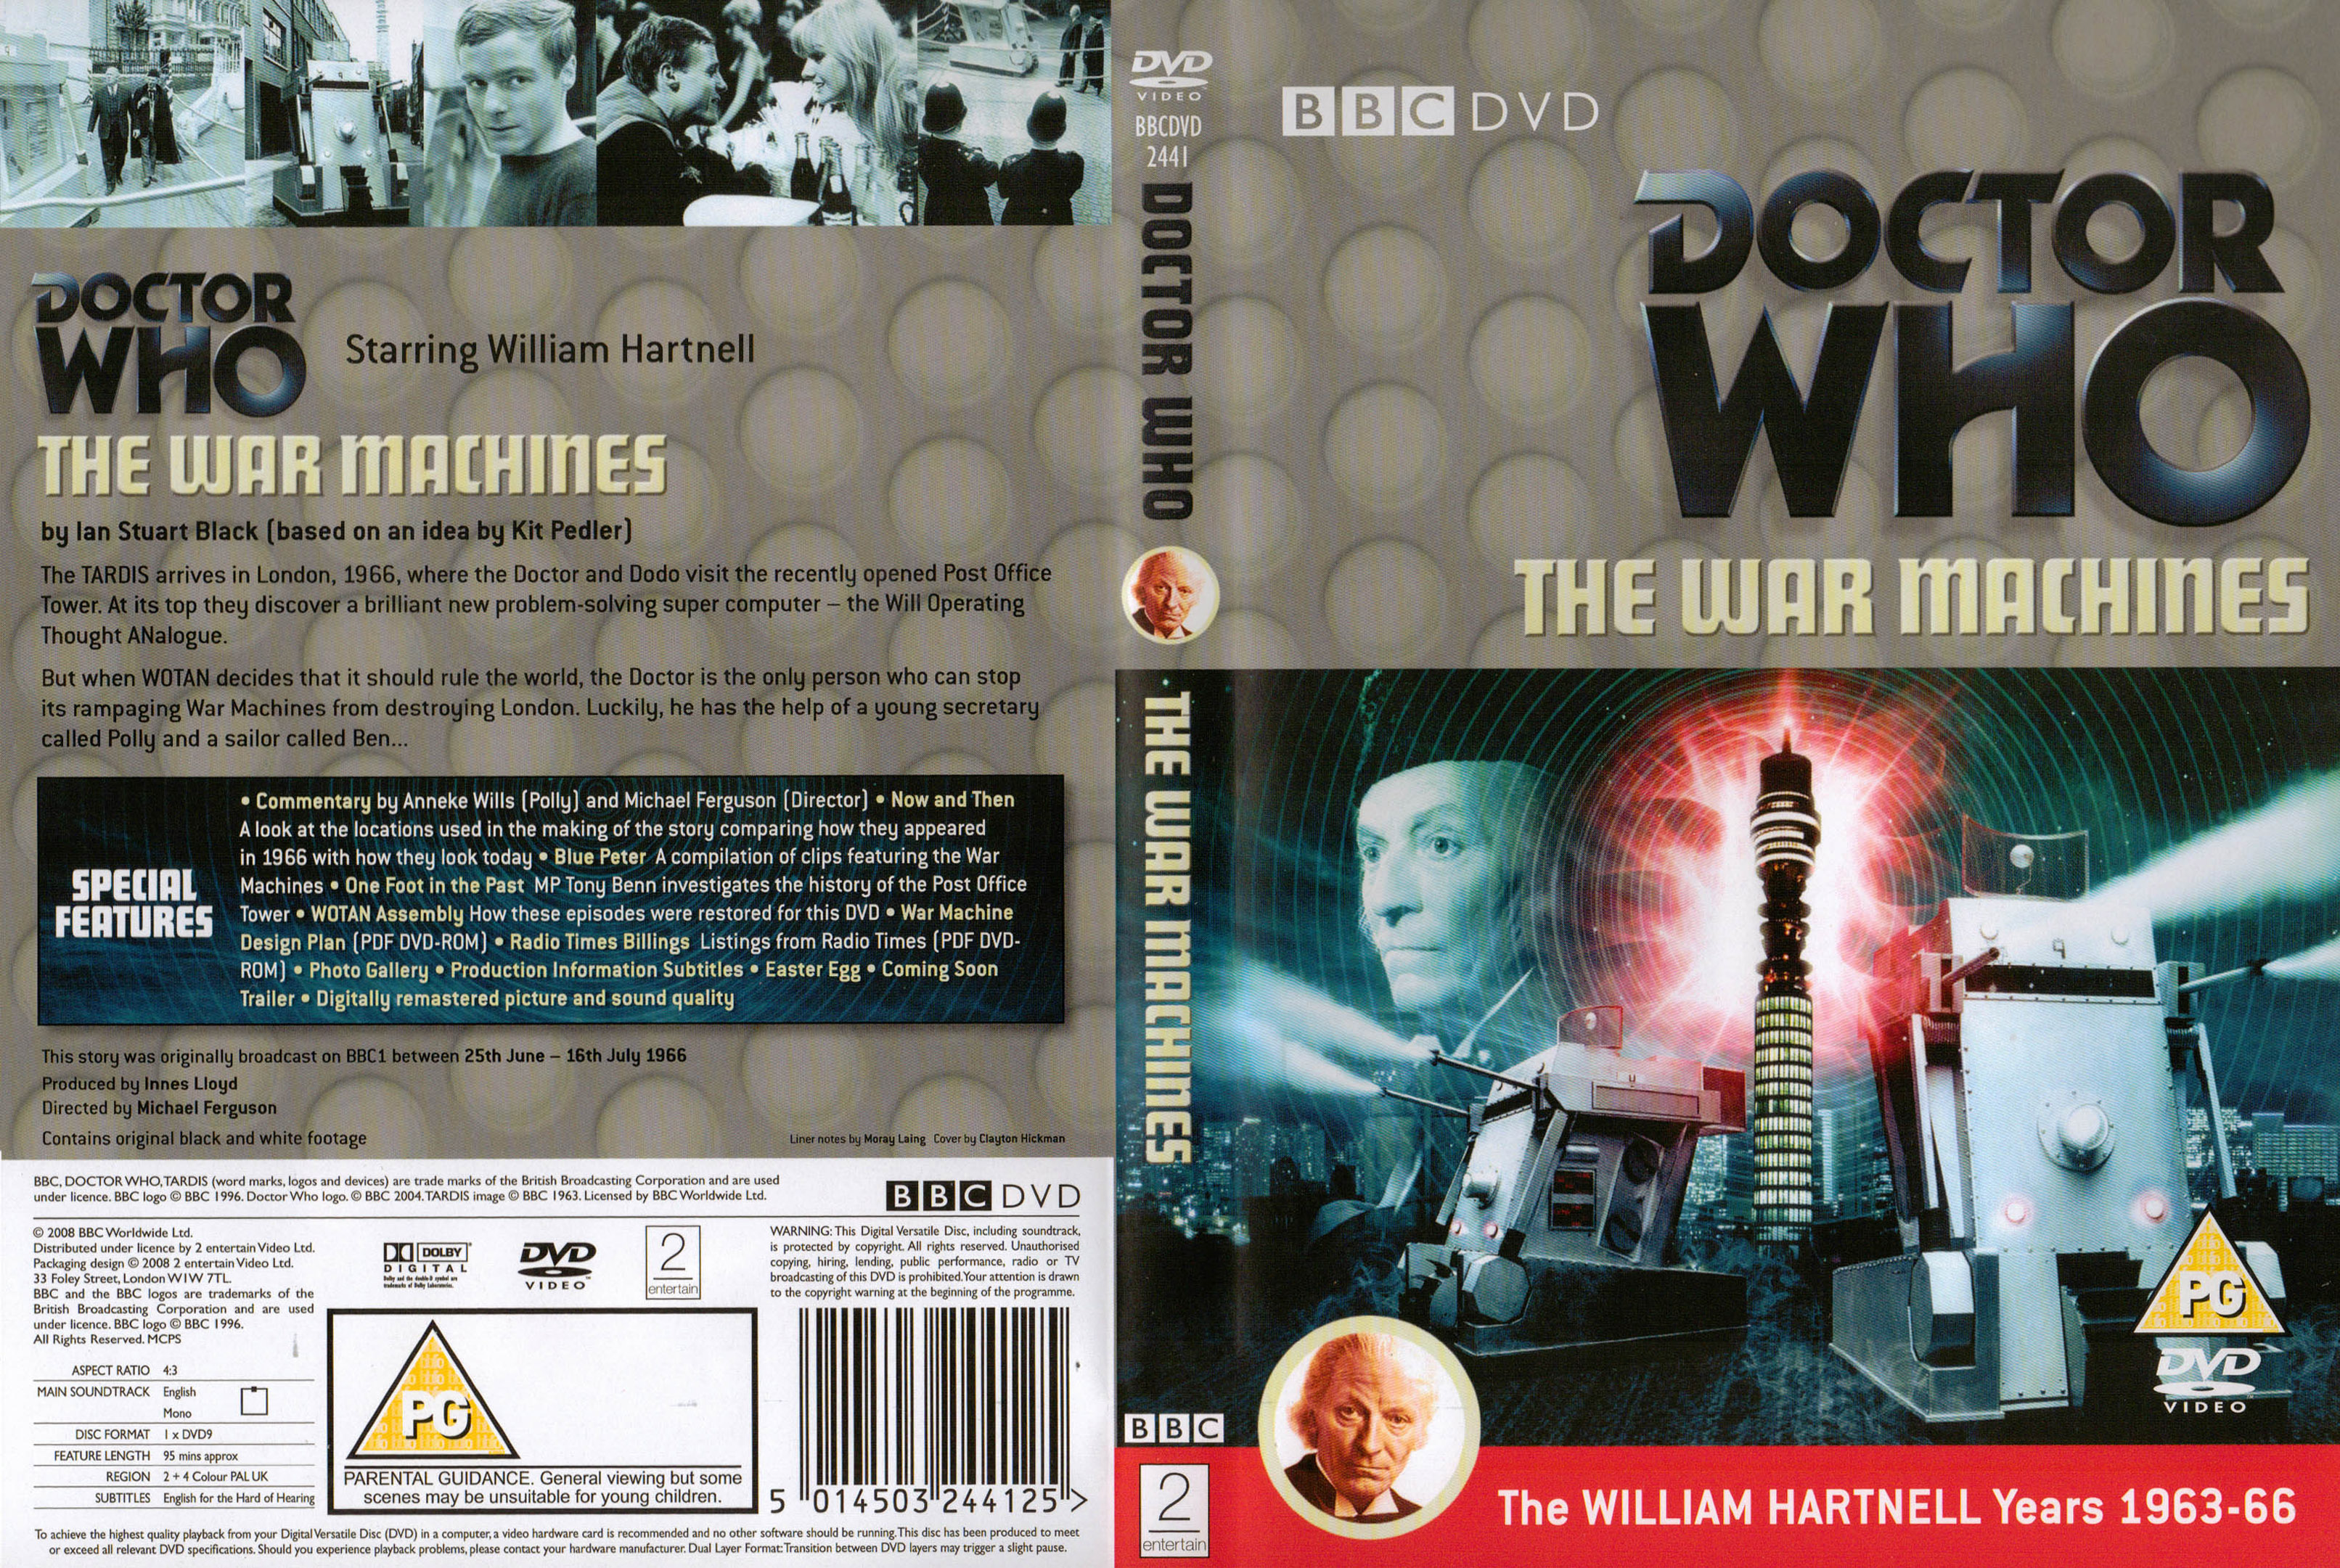 The War Machines DVD